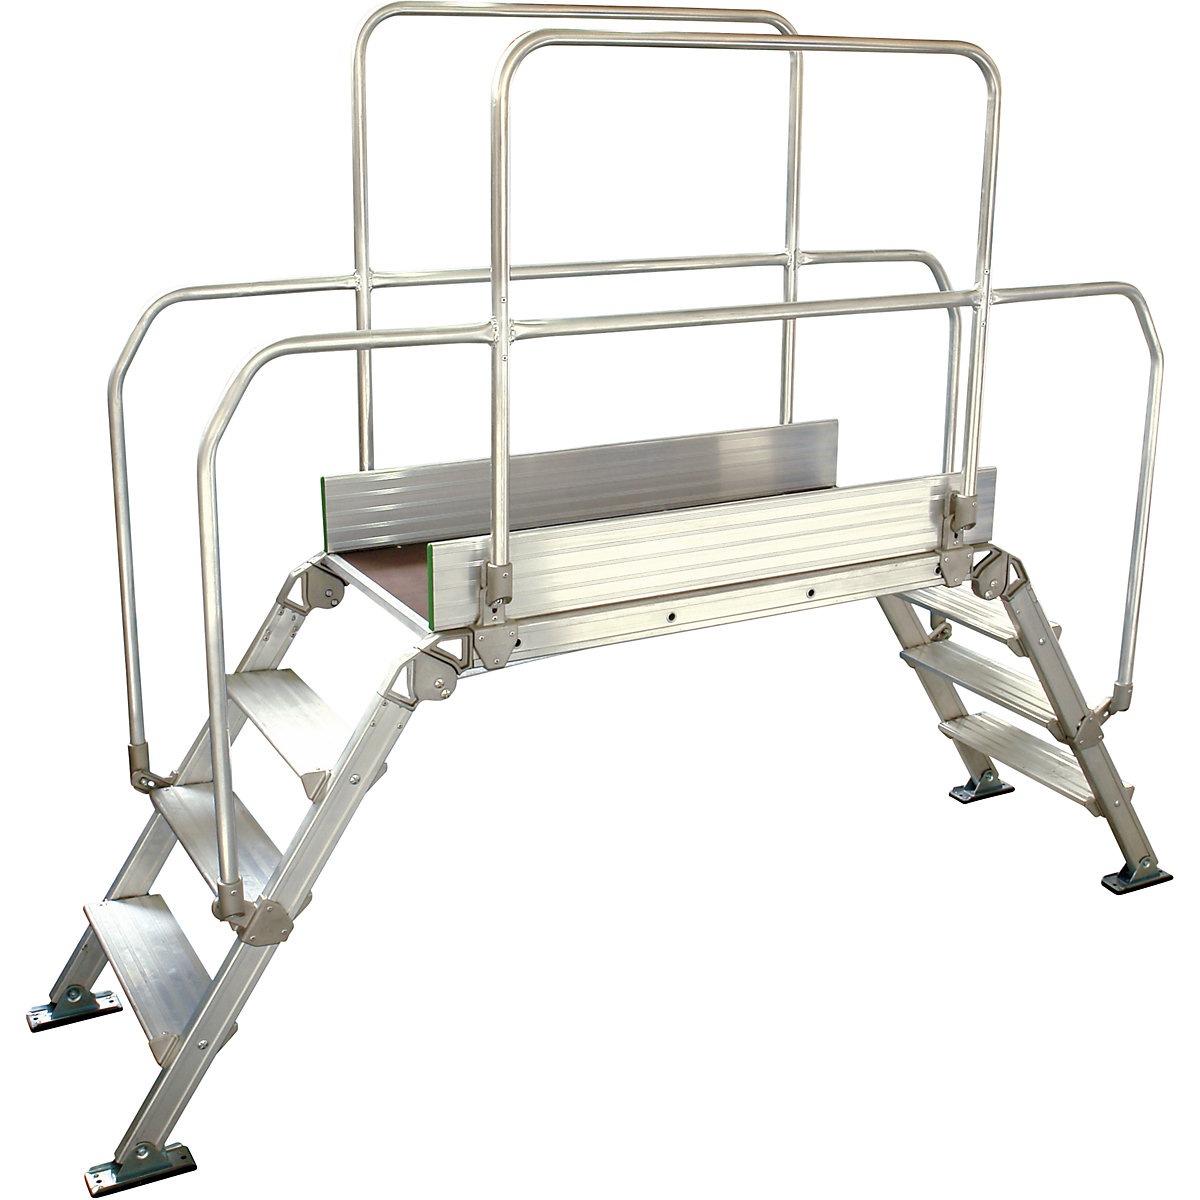 Aluminium ladderbrug, totale belasting 200 kg, 4 treden, platform 1200 x 530 mm-7